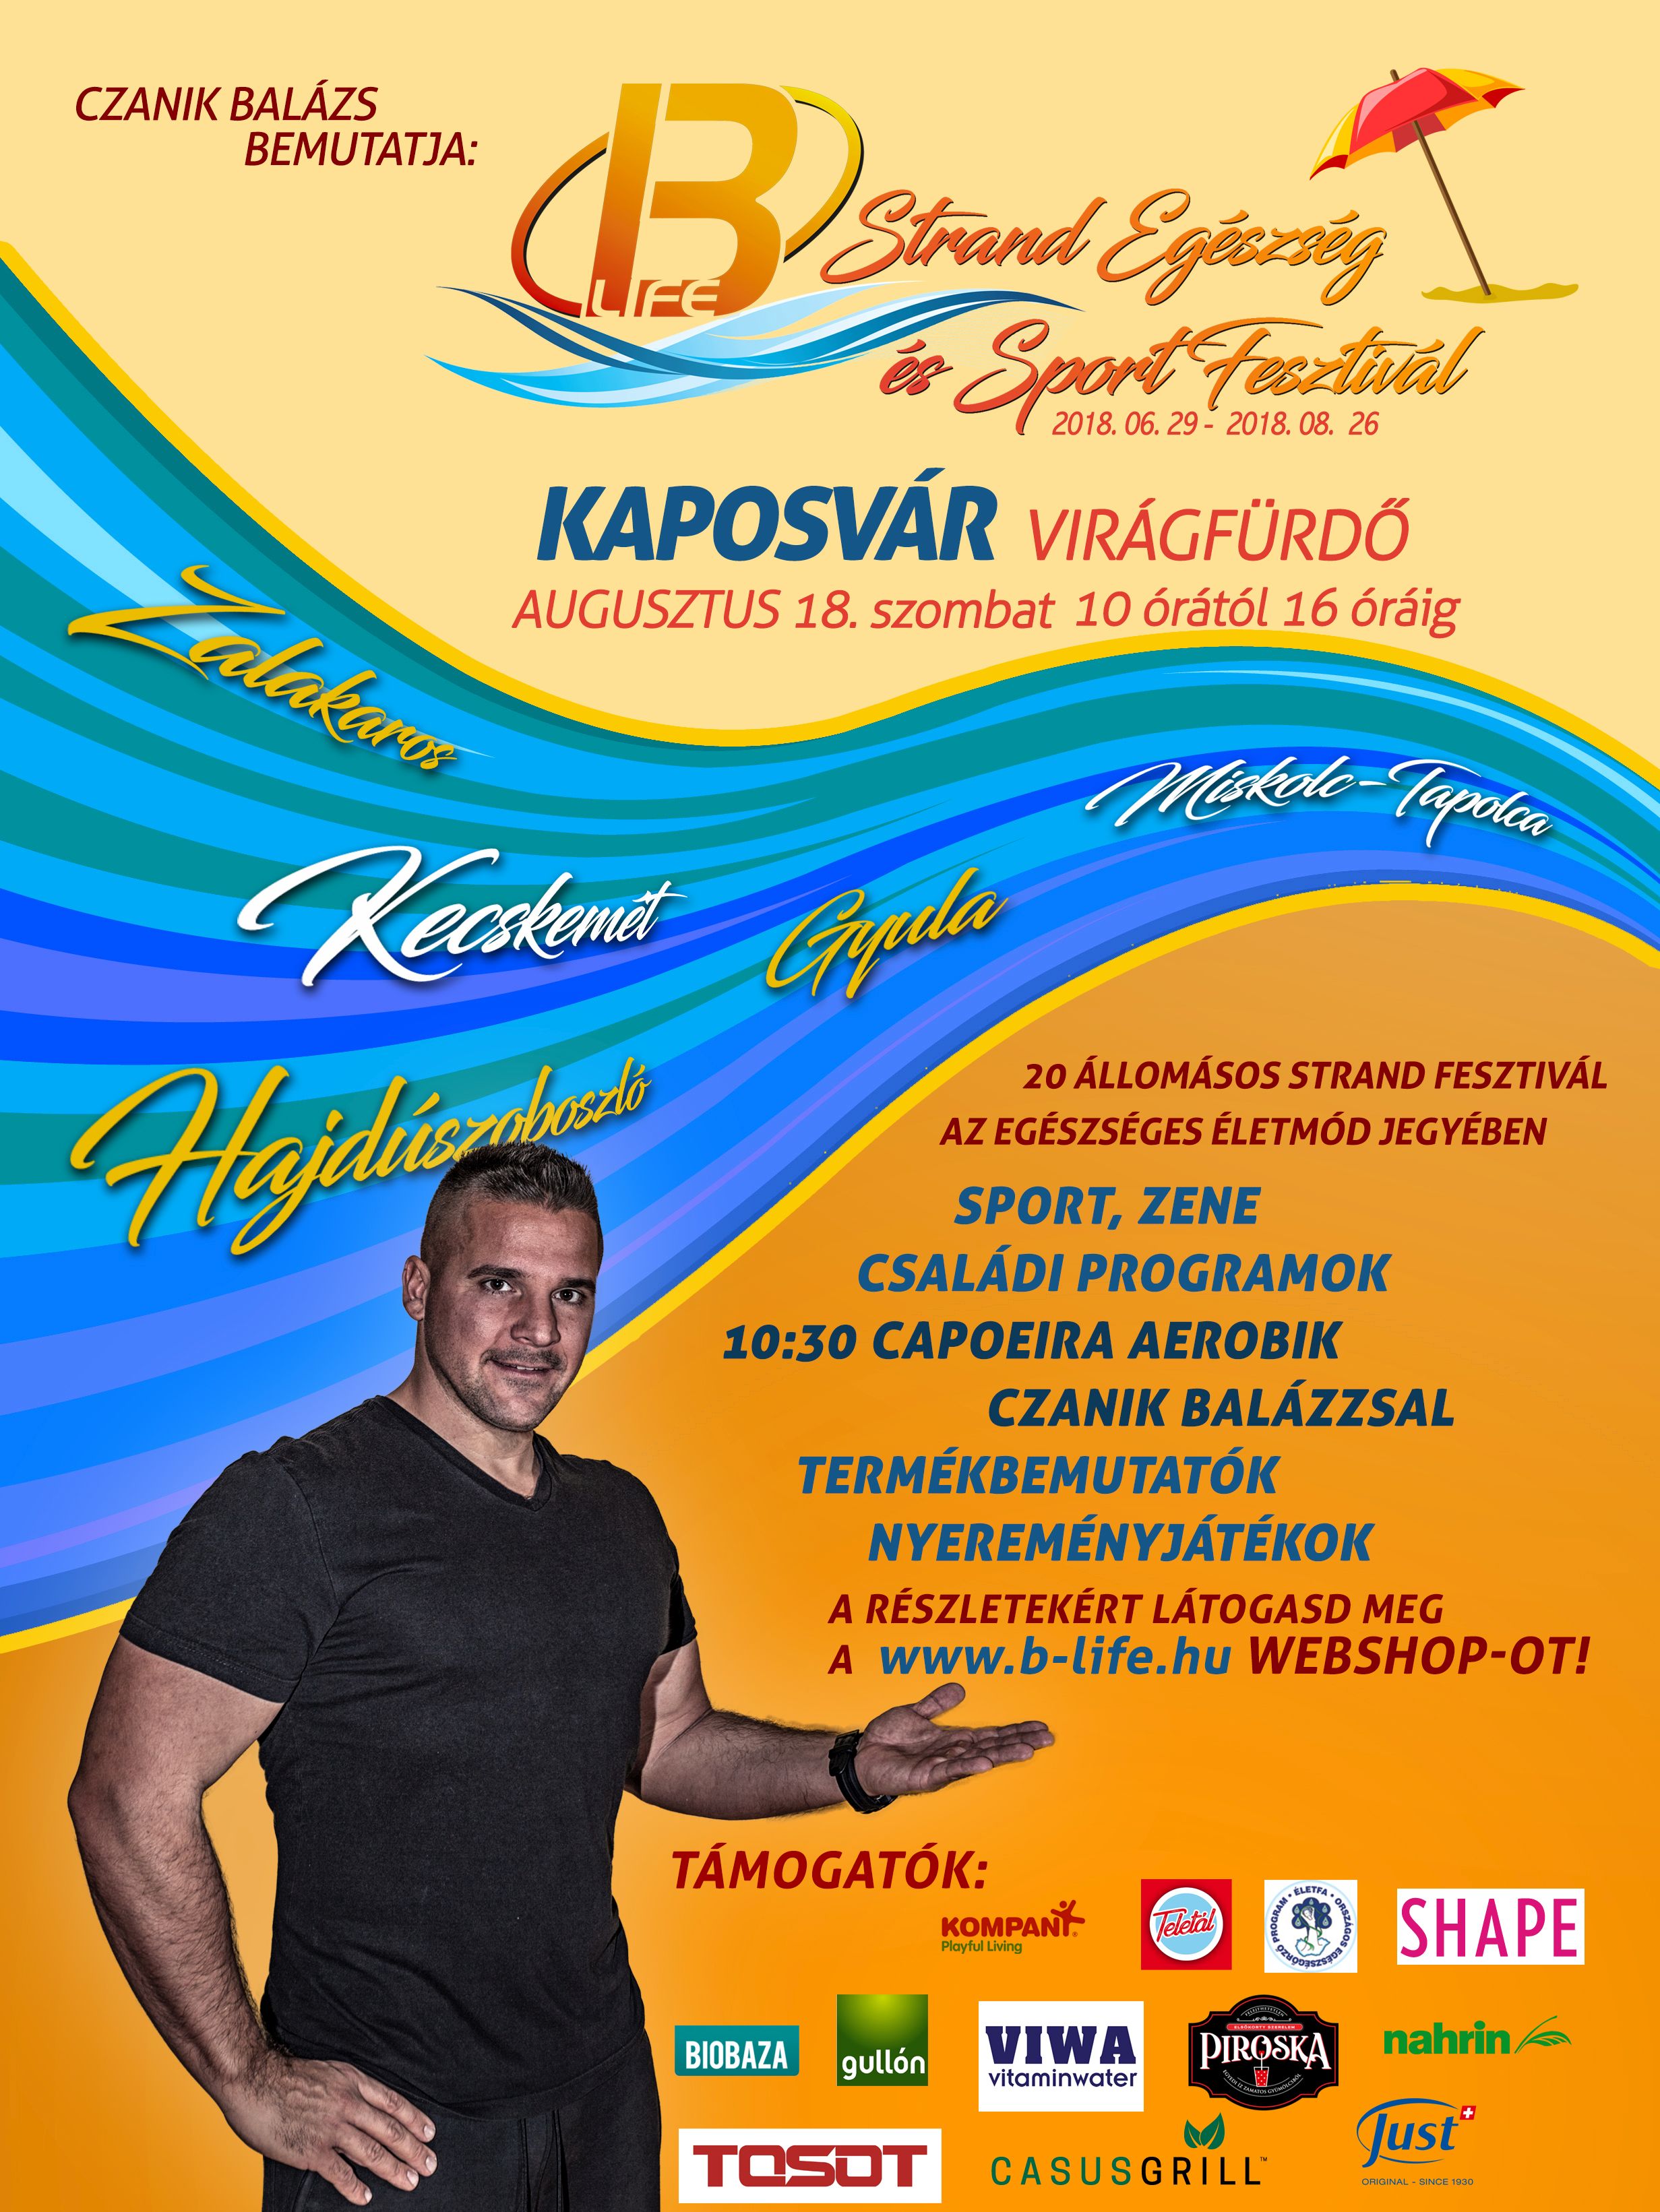 Czanik Balázs Road show plakát 2018 Kaposvár aug.jpg